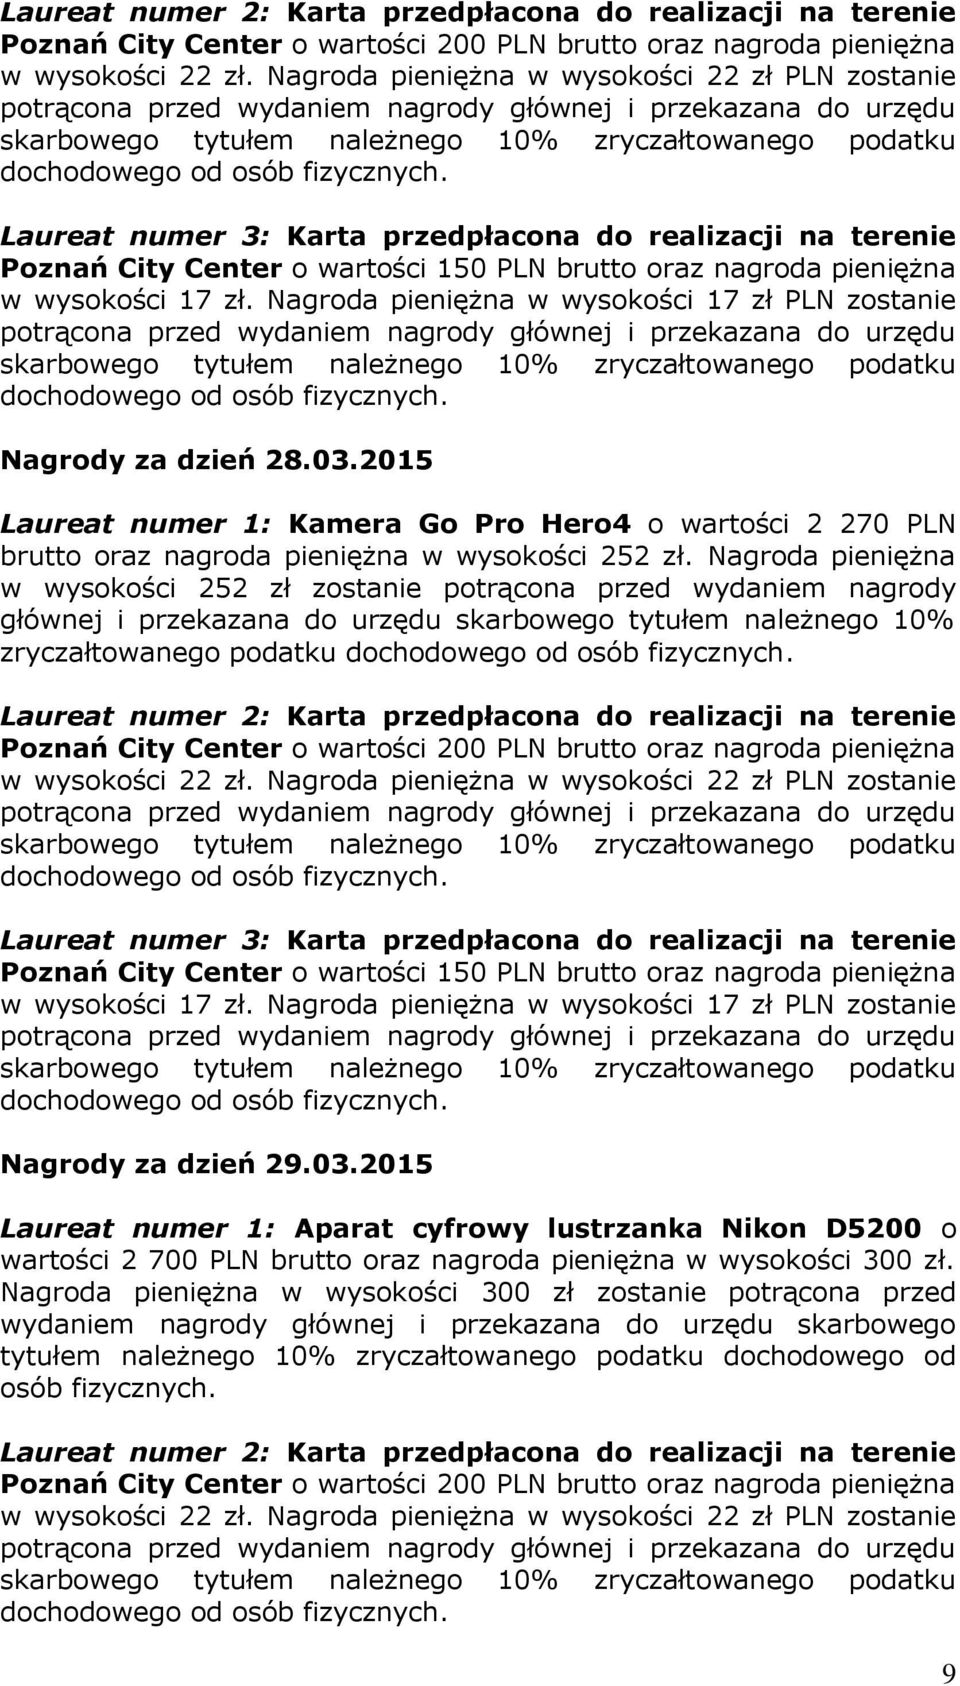 podatku Nagrody za dzień 29.03.2015 Laureat numer 1: Aparat cyfrowy lustrzanka Nikon D5200 o wartości 2 700 PLN brutto oraz nagroda pieniężna w wysokości 300 zł.